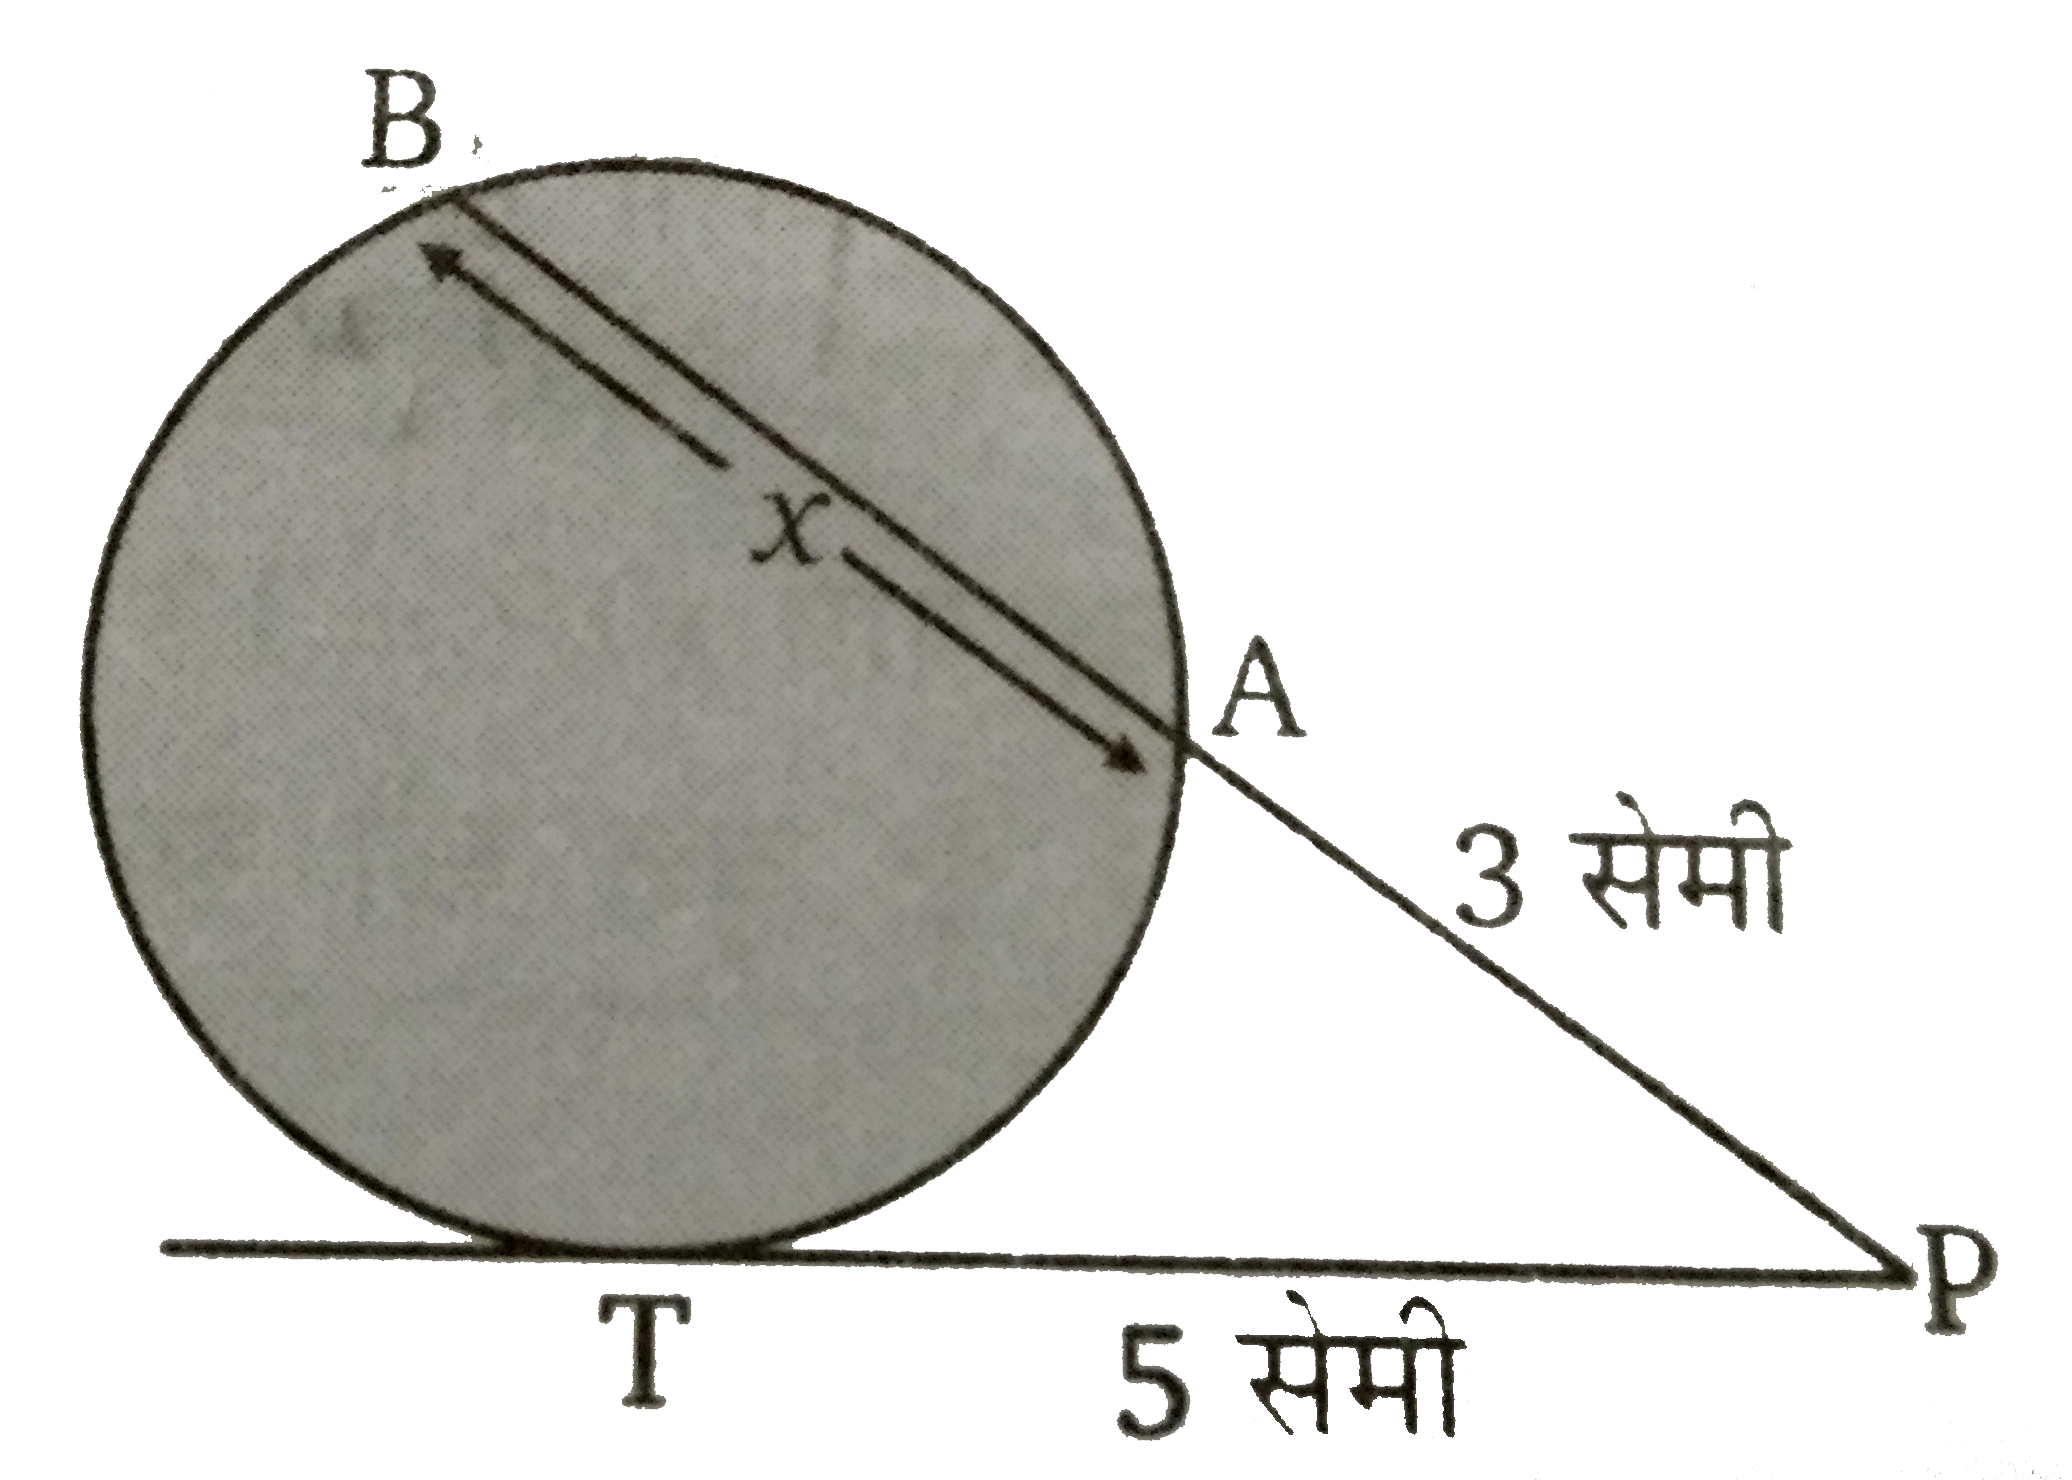 चित्र  में PAB  एक छेदक रेखा तथा PT  एक स्पर्श रेखा हैं तब x  की लम्बाई ज्ञात कीजिए ।